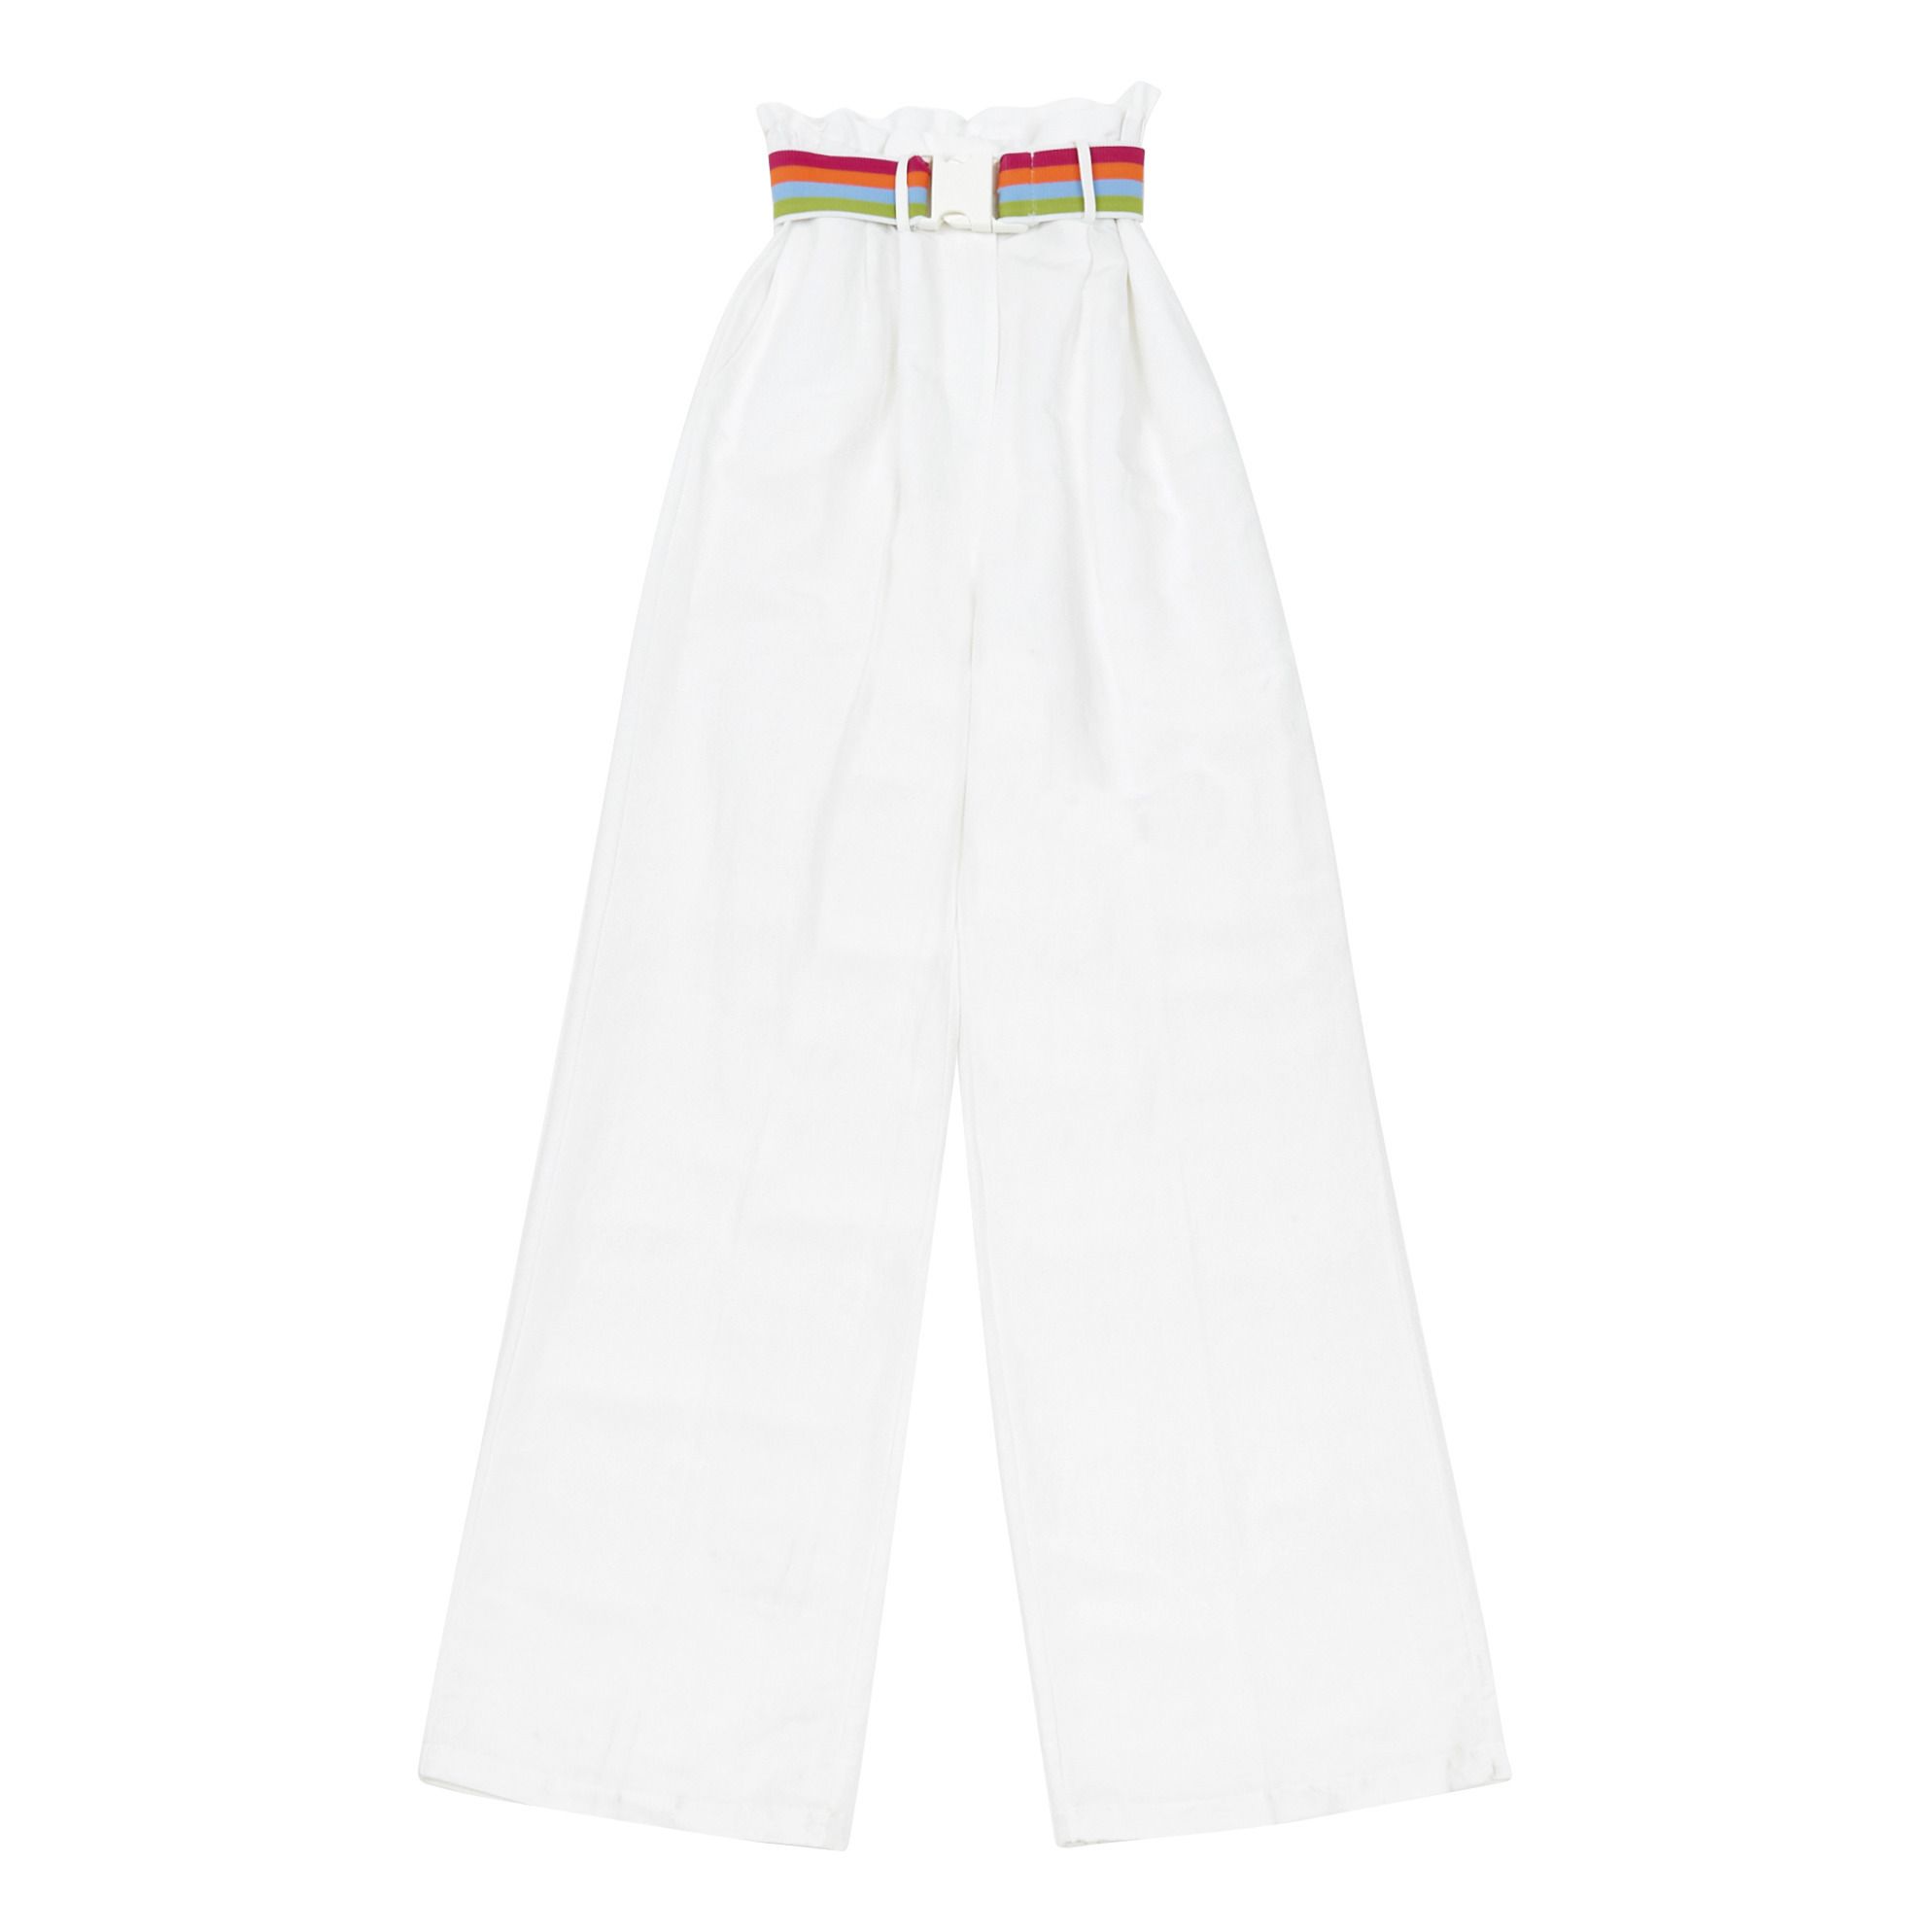 Indee - Pantalon Goeland - Fille - Blanc